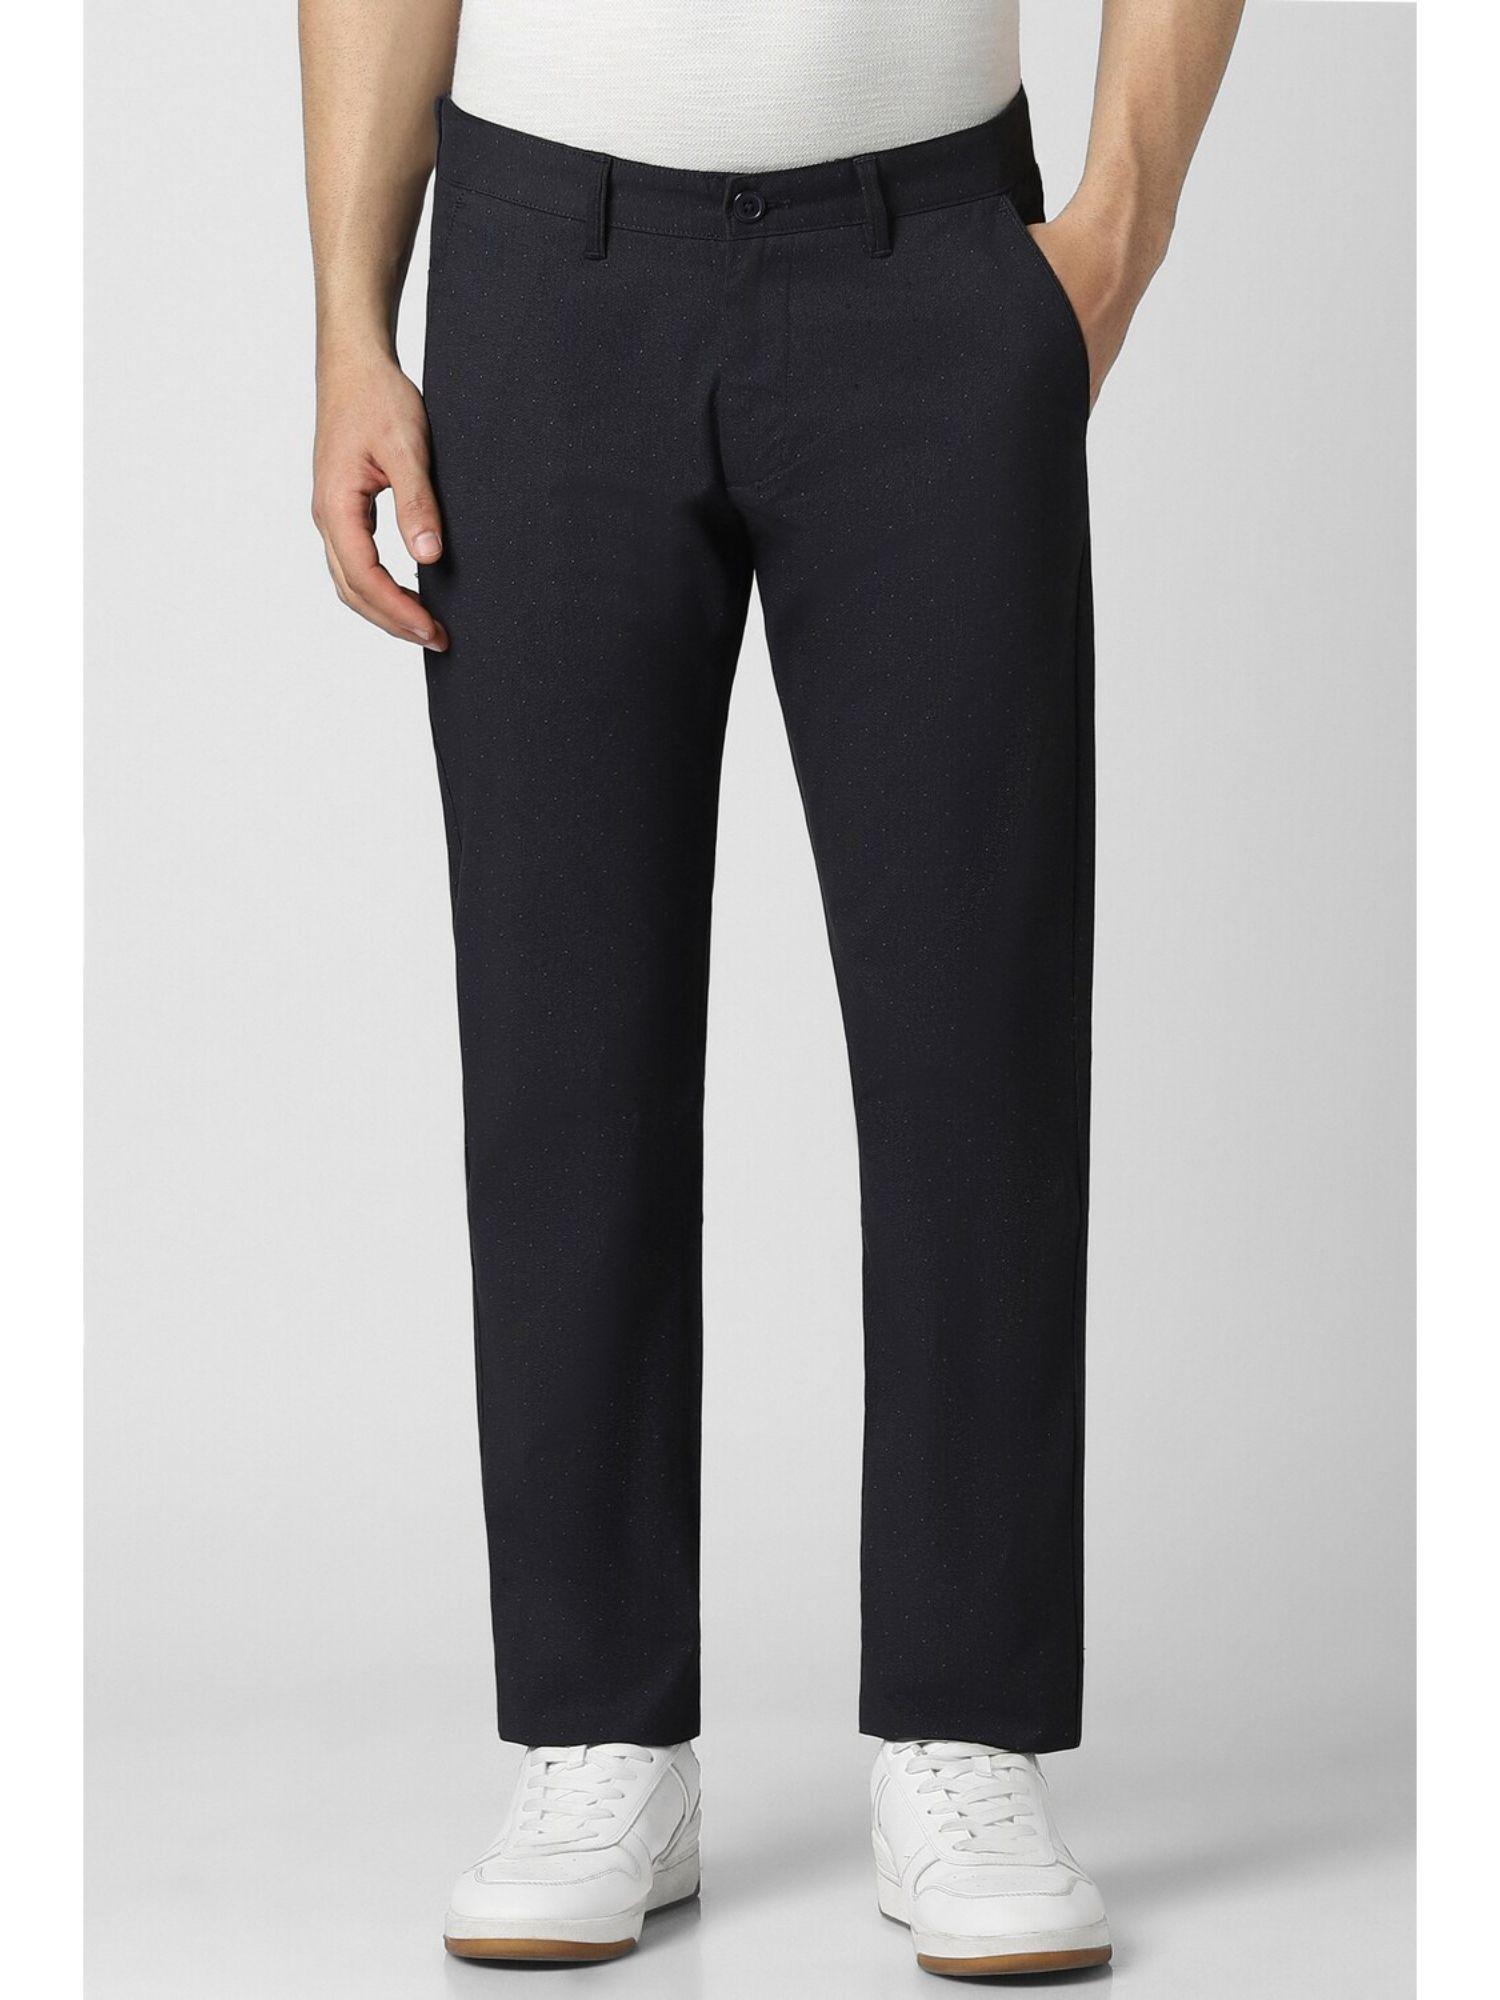 men-black-dots-slim-fit-trousers